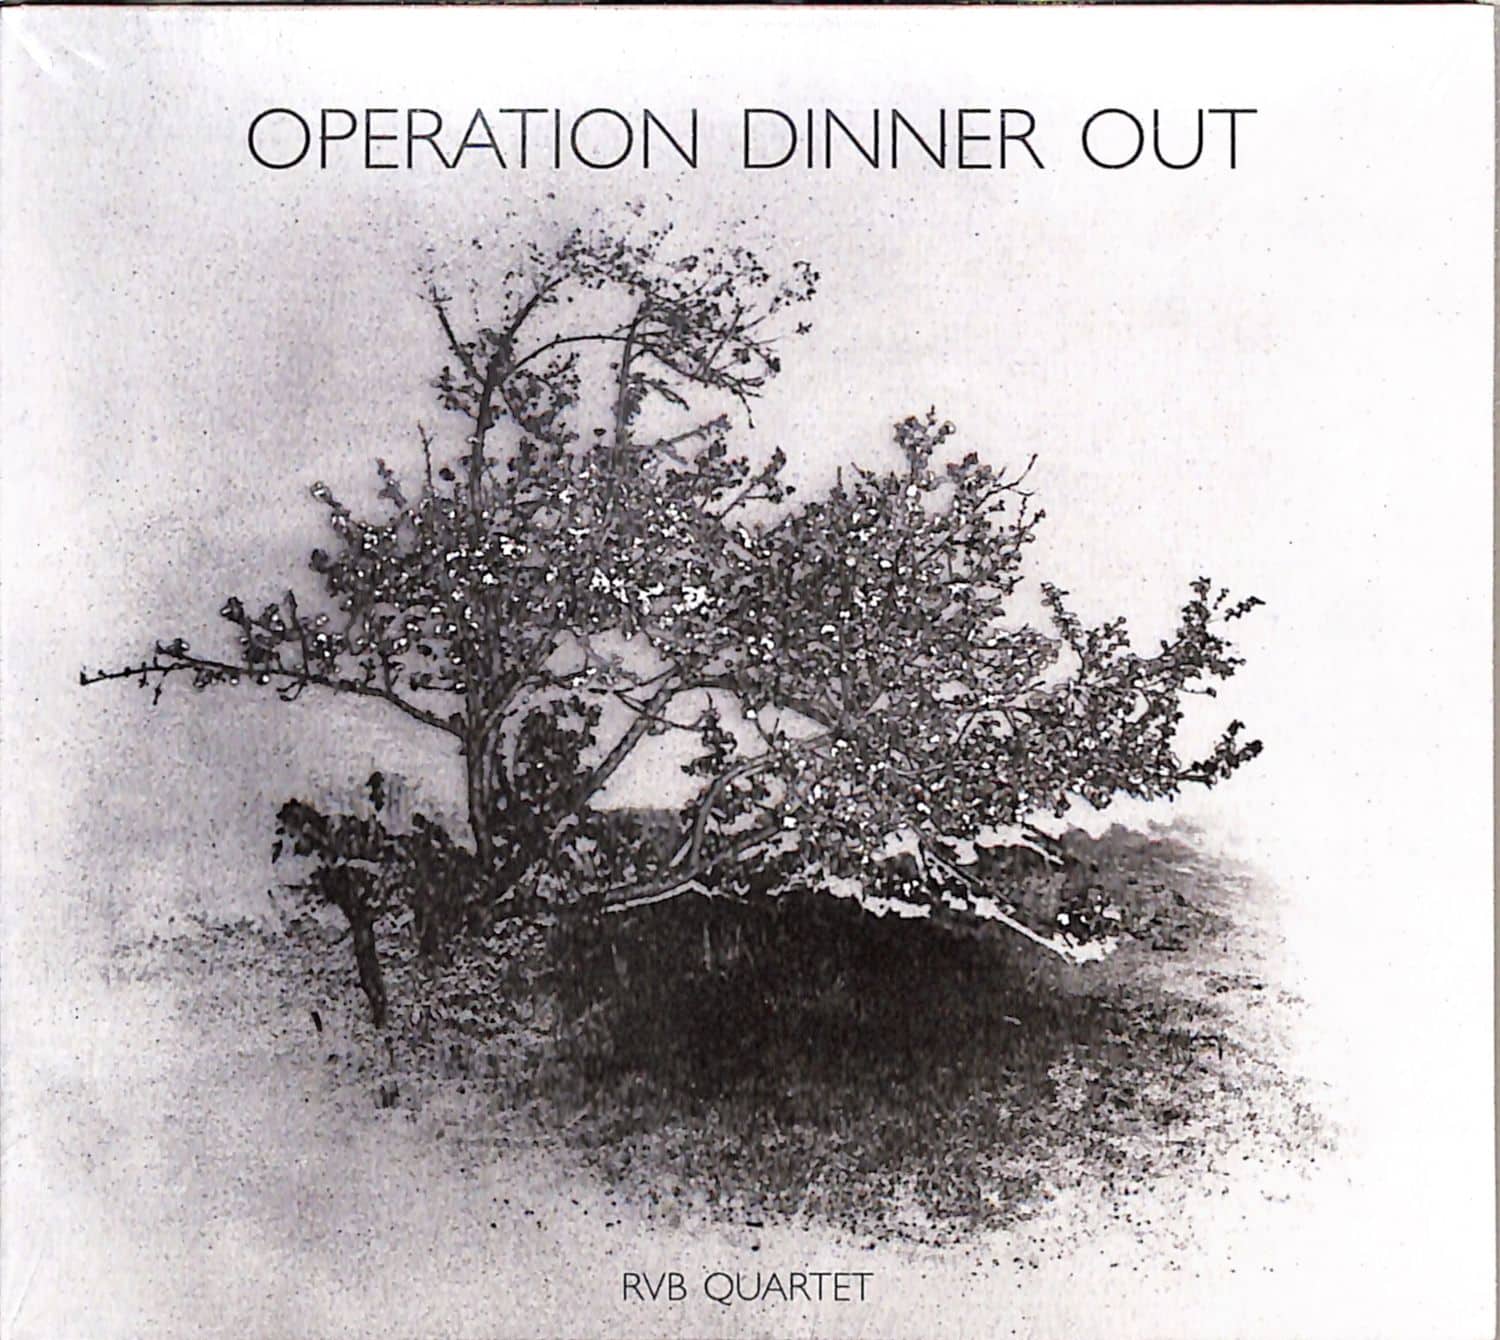 RVB Quartet - OPERATION DINNER OUT 